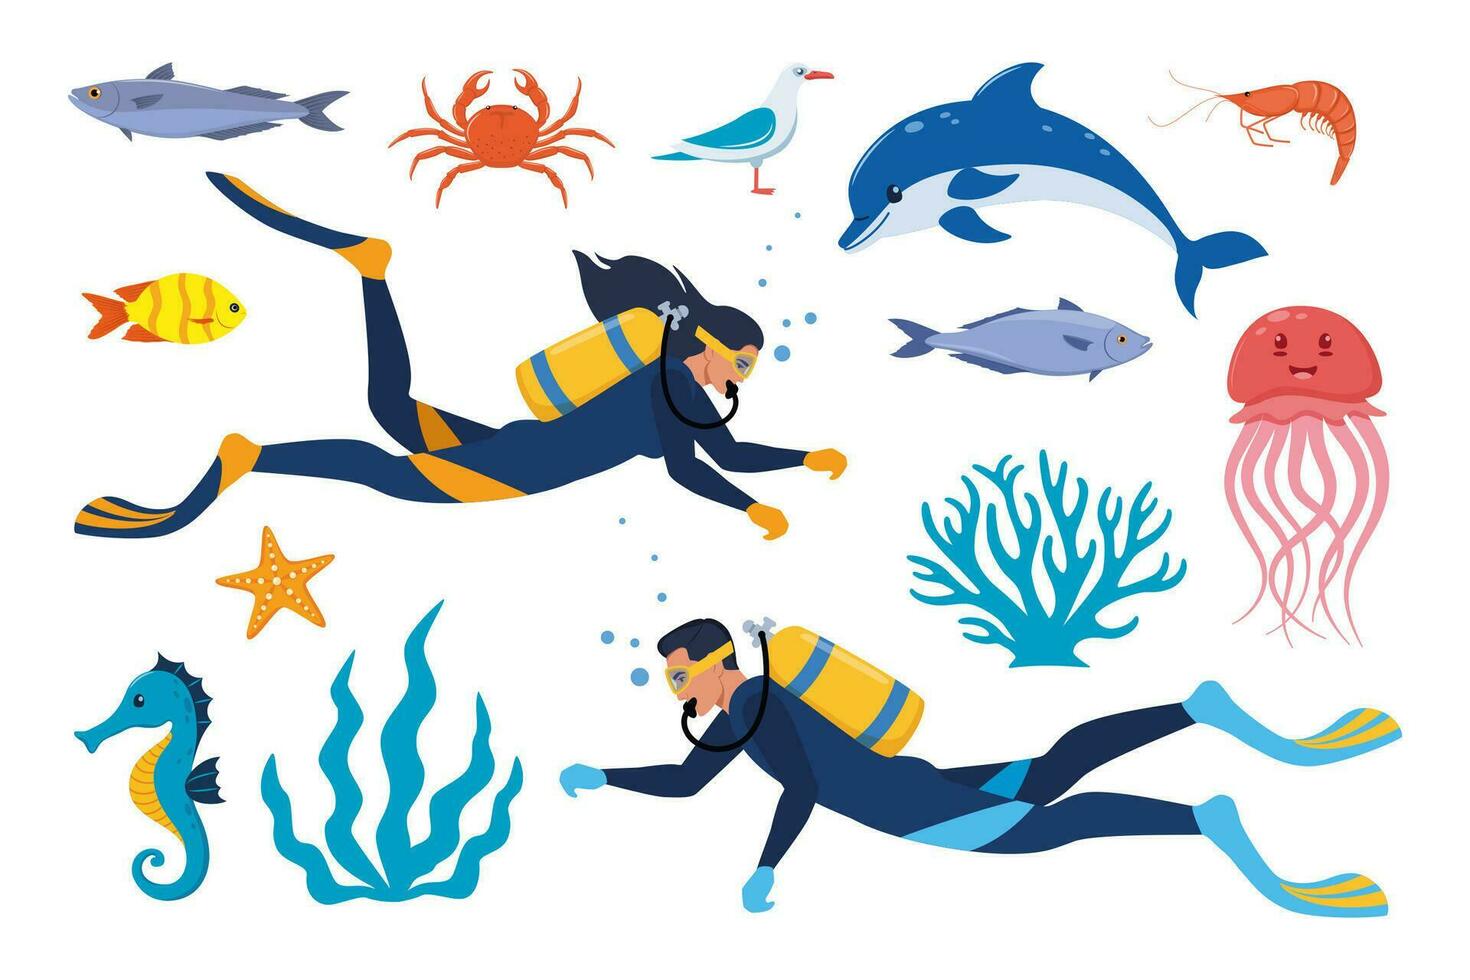 mergulho e embaixo da agua mundo, conjunto do elementos. mergulhador com Aqualung oxigênio cilindros marinho vida elementos. estrela do Mar, polvo, medusa, corais, algas. vetor ilustração.